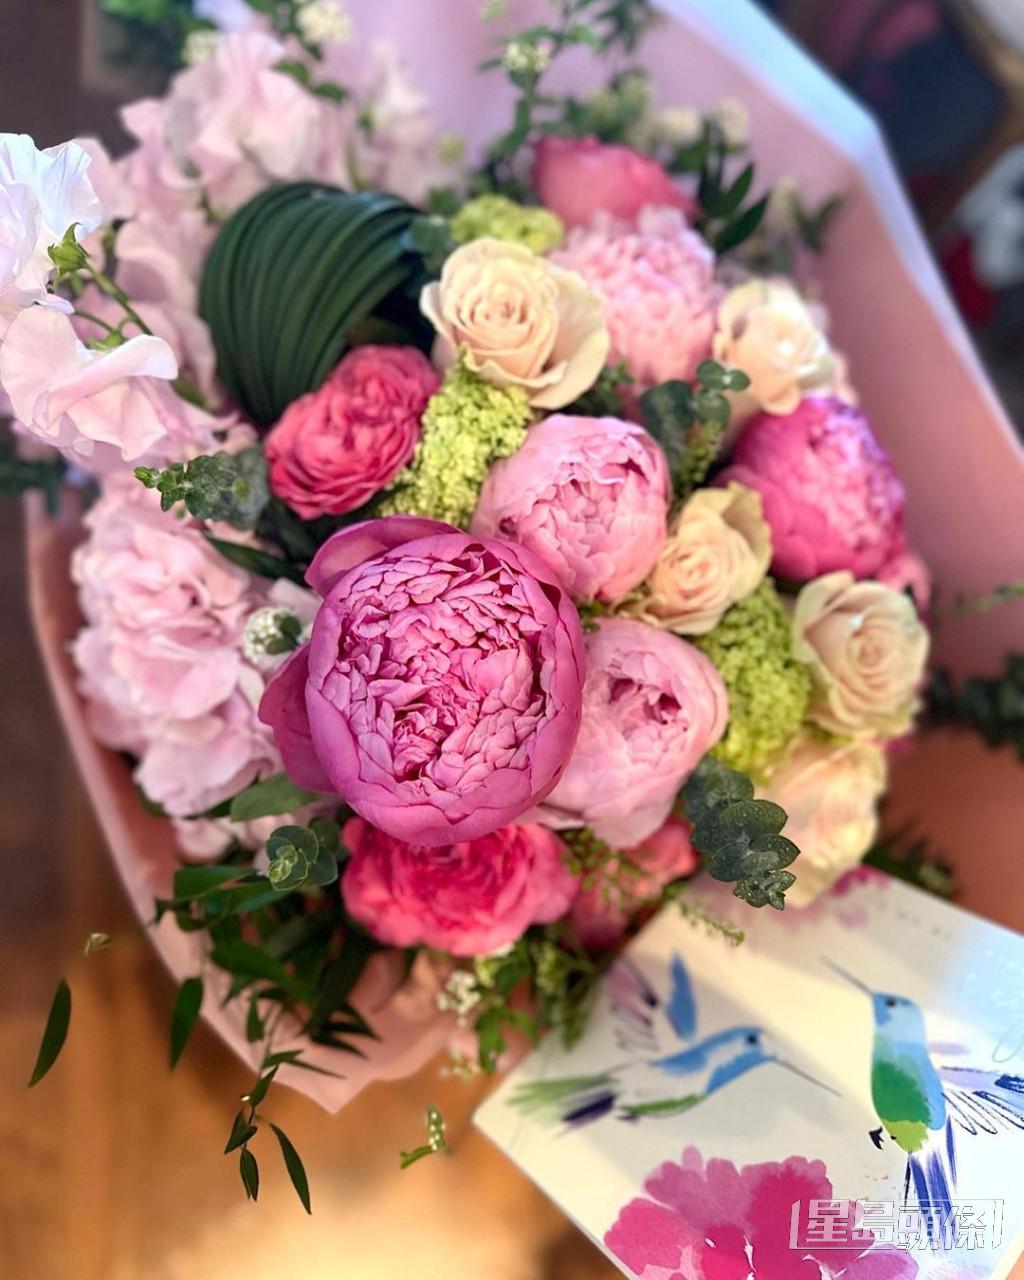 黎姿於結婚14周年紀念日在IG分享美麗花束照。  ​